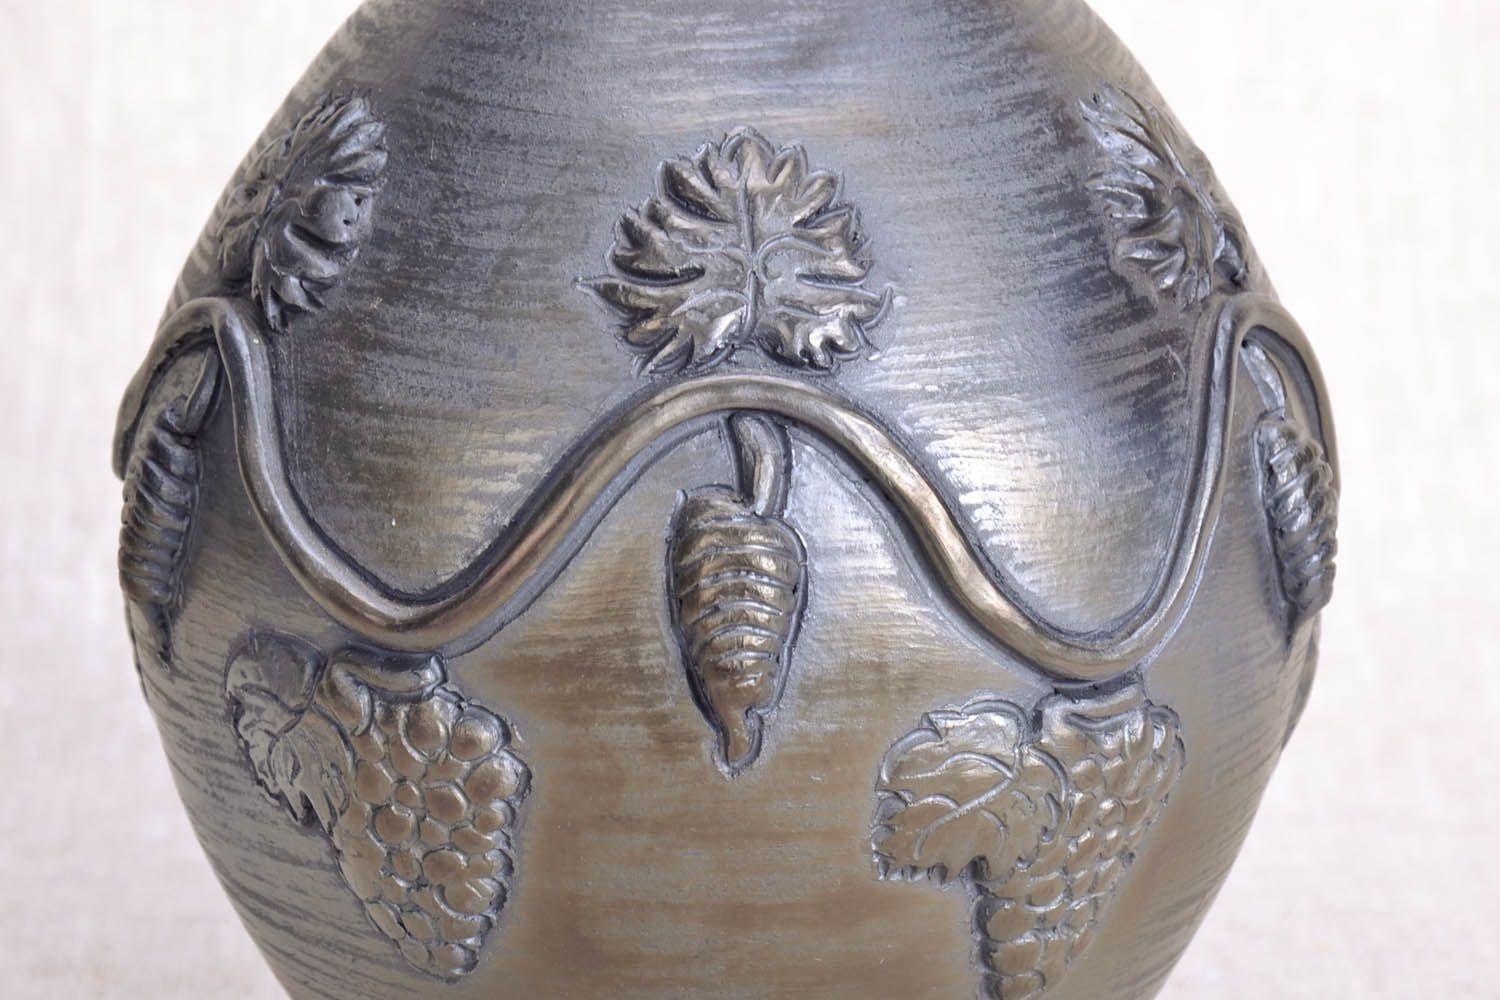 Jarro de argila com elementos moldados feito à mão louça de cerâmica decorativa artesanal foto 4